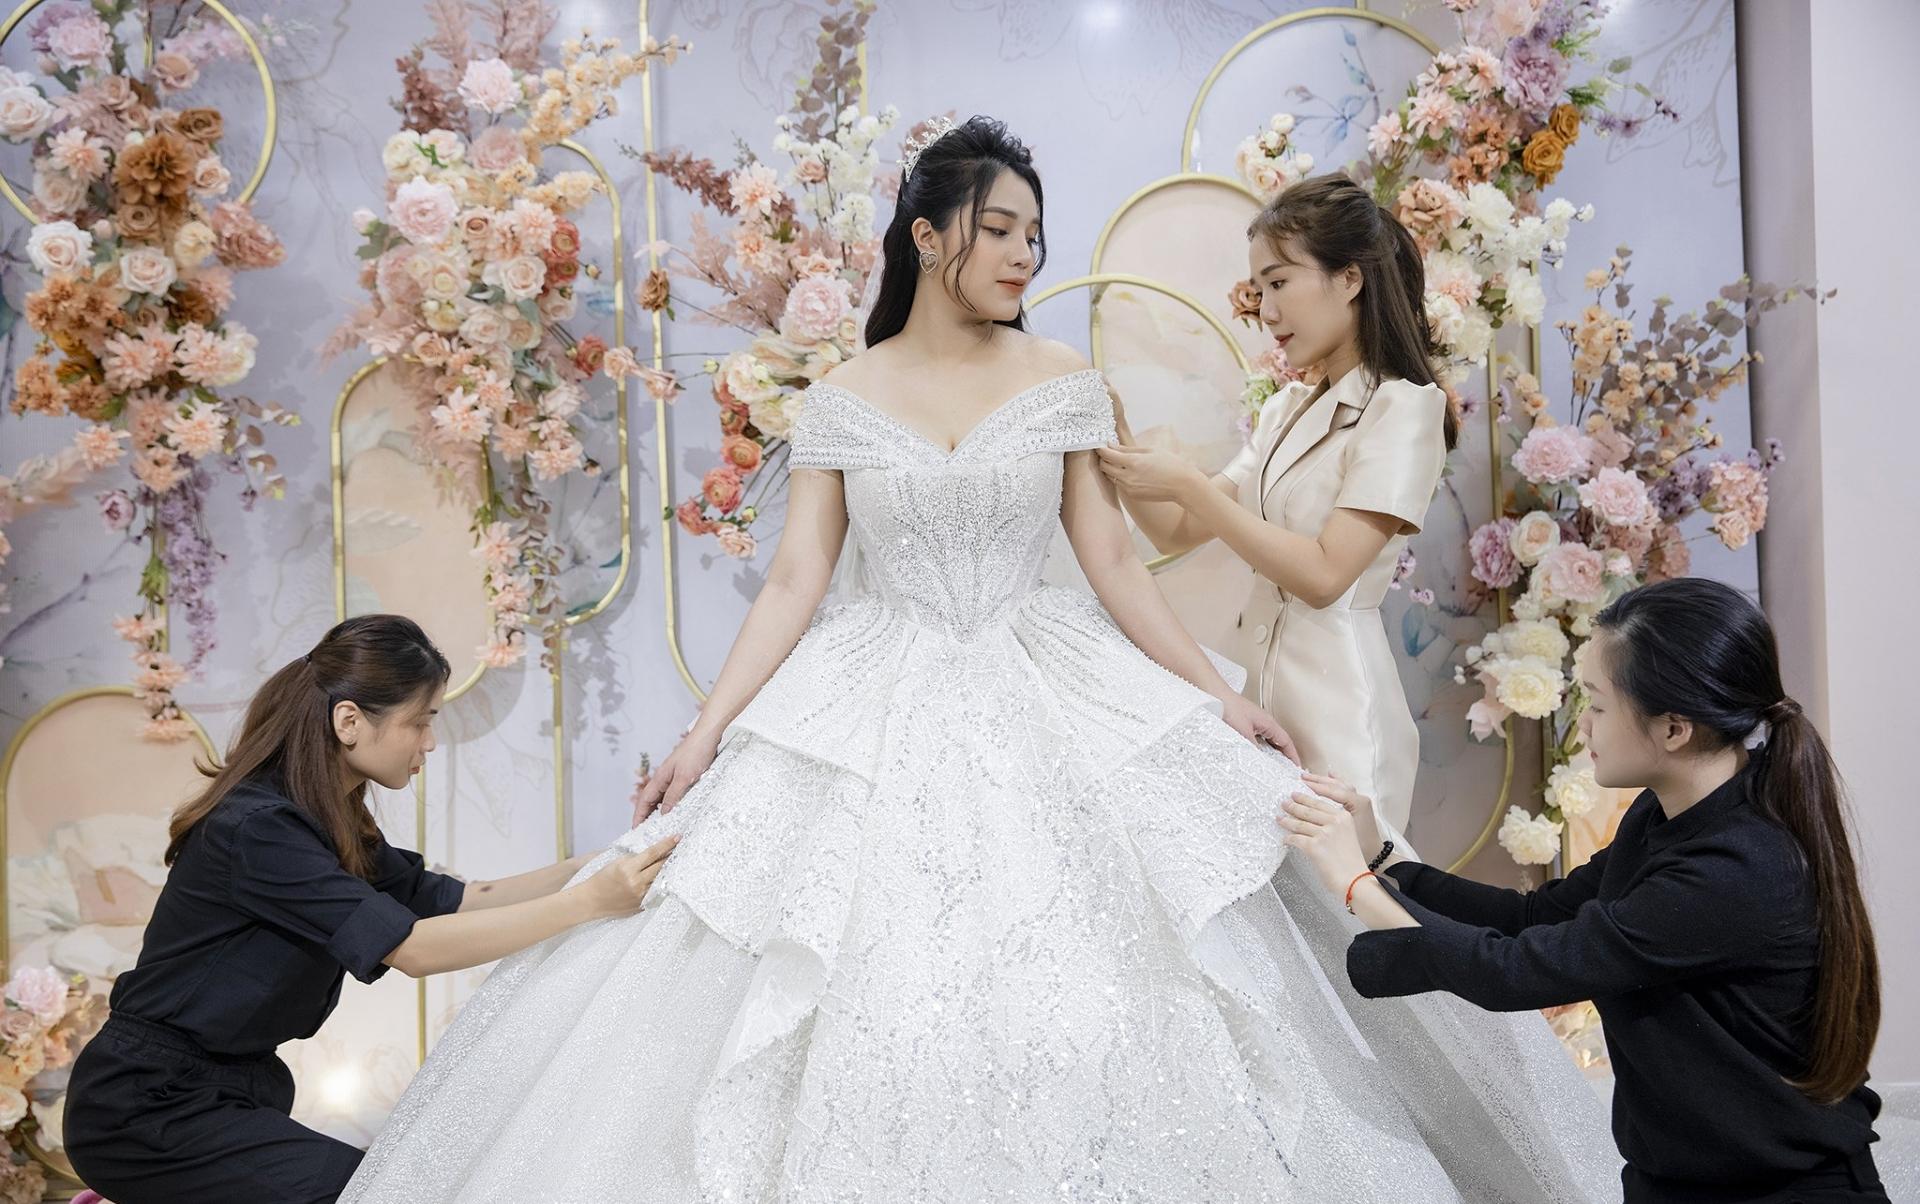 Phần tùng váy được sử dụng công nghệ in 3D giúp tạo nên độ bồng bềnh mỗi lần cô dâu bước đi